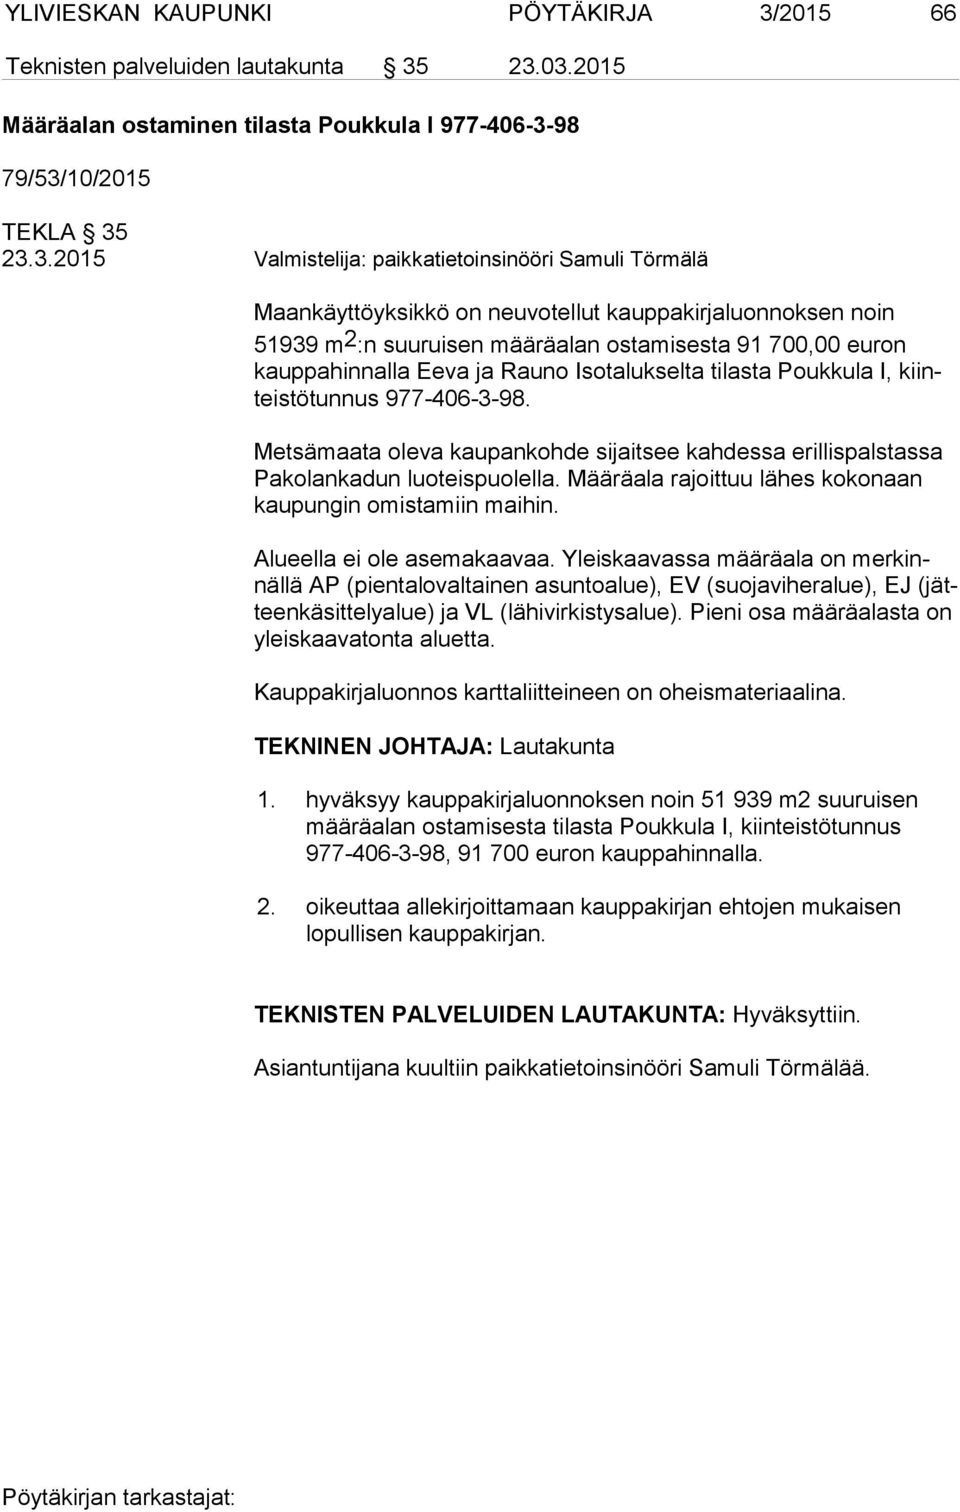 23.03.2015 Määräalan ostaminen tilasta Poukkula I 977-406-3-98 79/53/10/2015 TEKLA 35 23.3.2015 Valmistelija: paikkatietoinsinööri Samuli Törmälä Maankäyttöyksikkö on neuvotellut